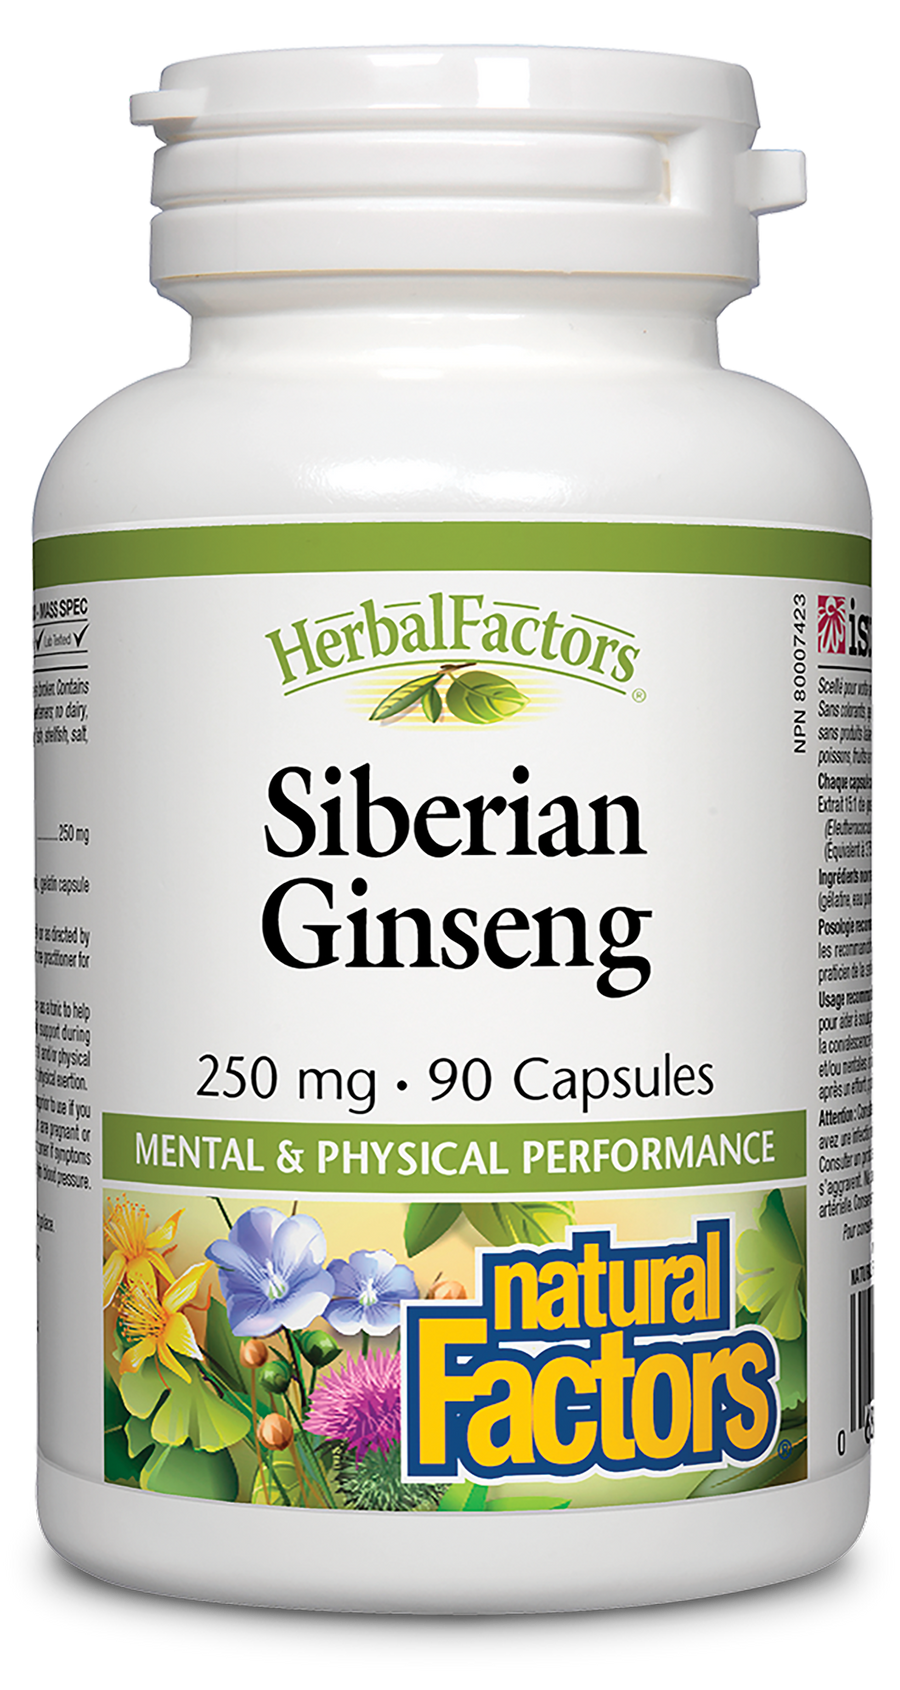 Natural Factors Siberian Ginseng, HerbalFactors 250 mg 90 Capsules